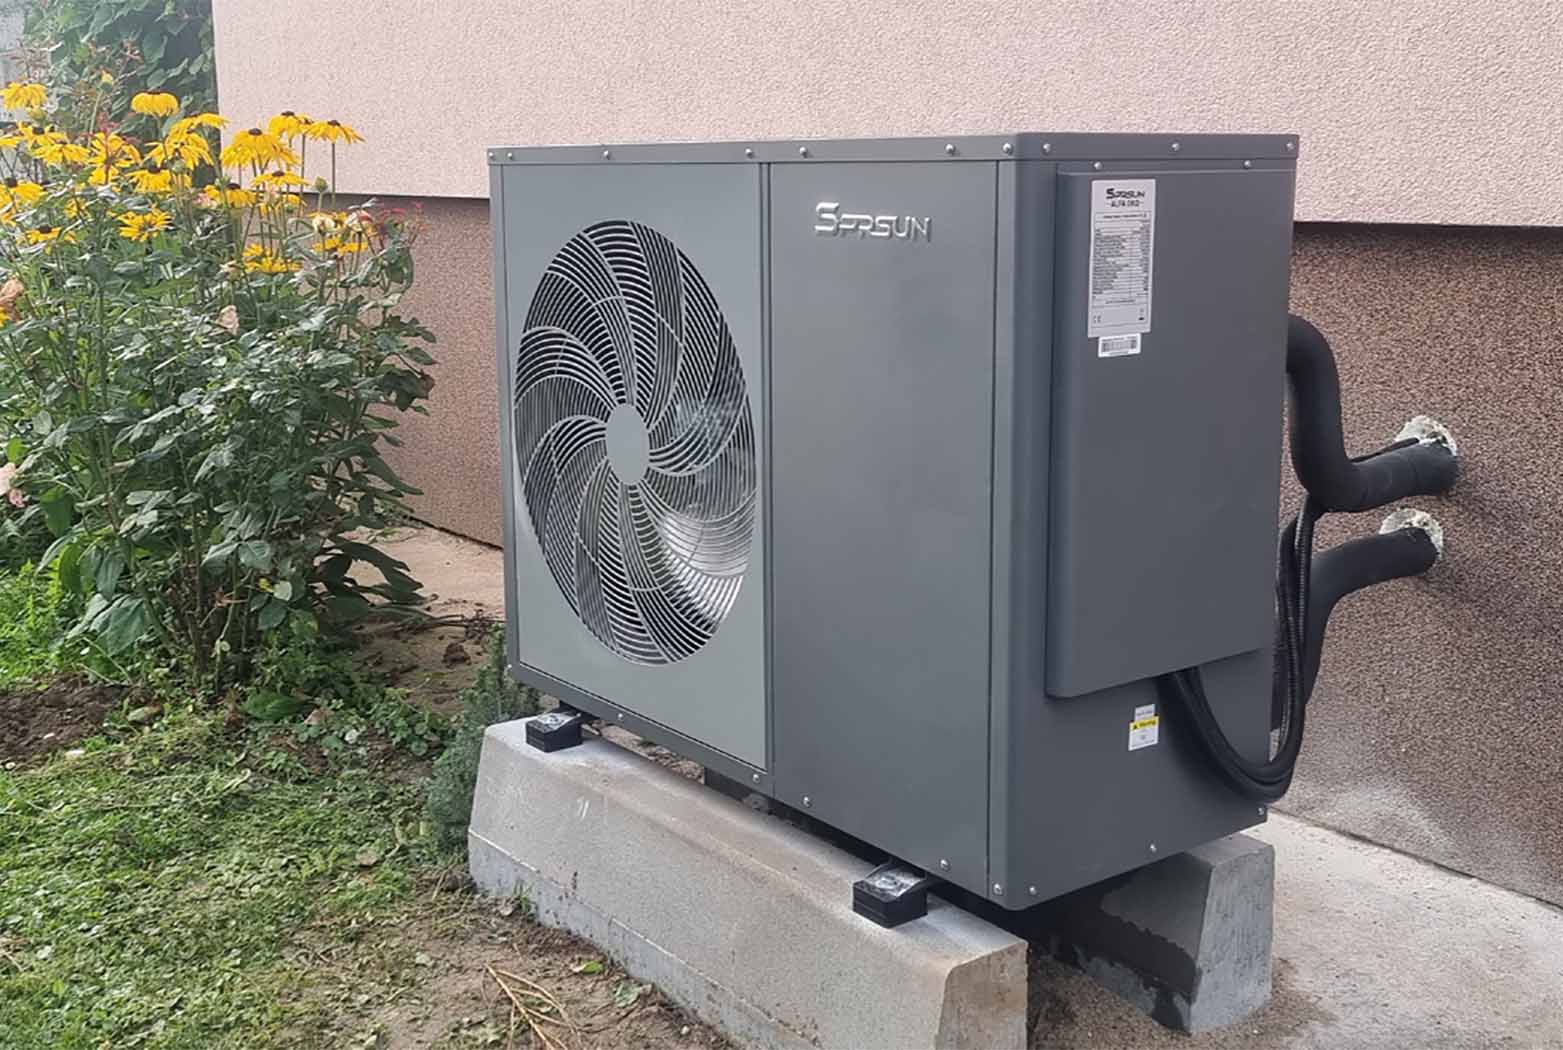 SPRSUN air source heat pump in Czech Republic